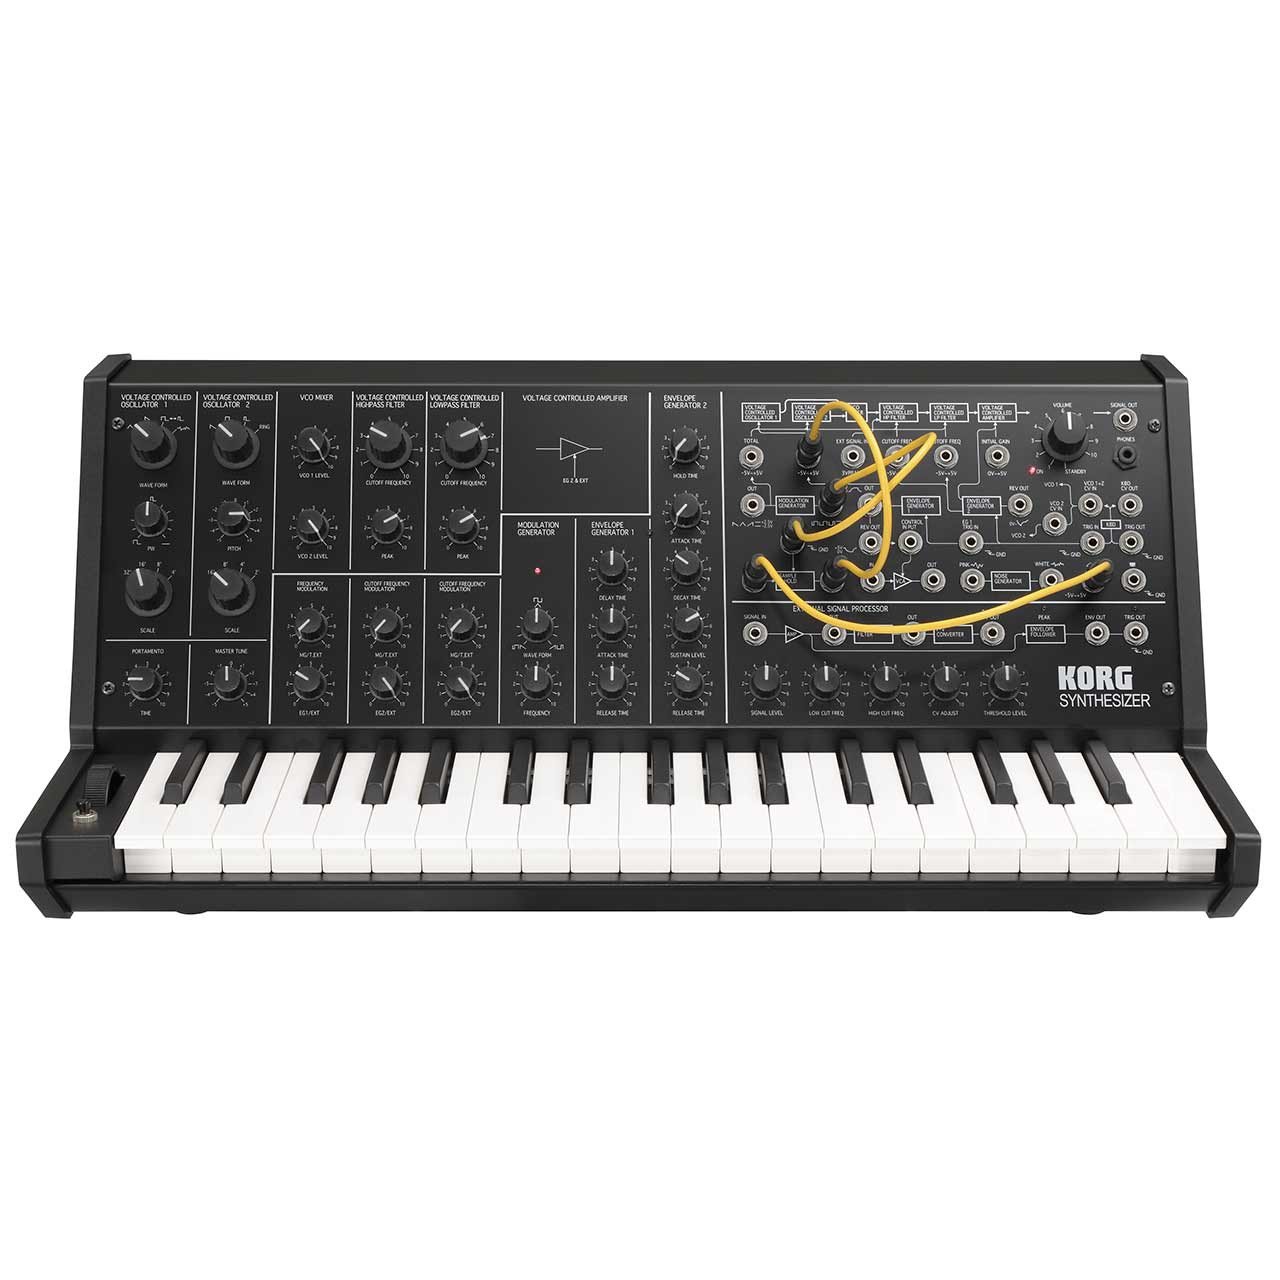 Keyboard Synthesizers - Korg MS-20 MINI Analog Synthesizer Keyboard